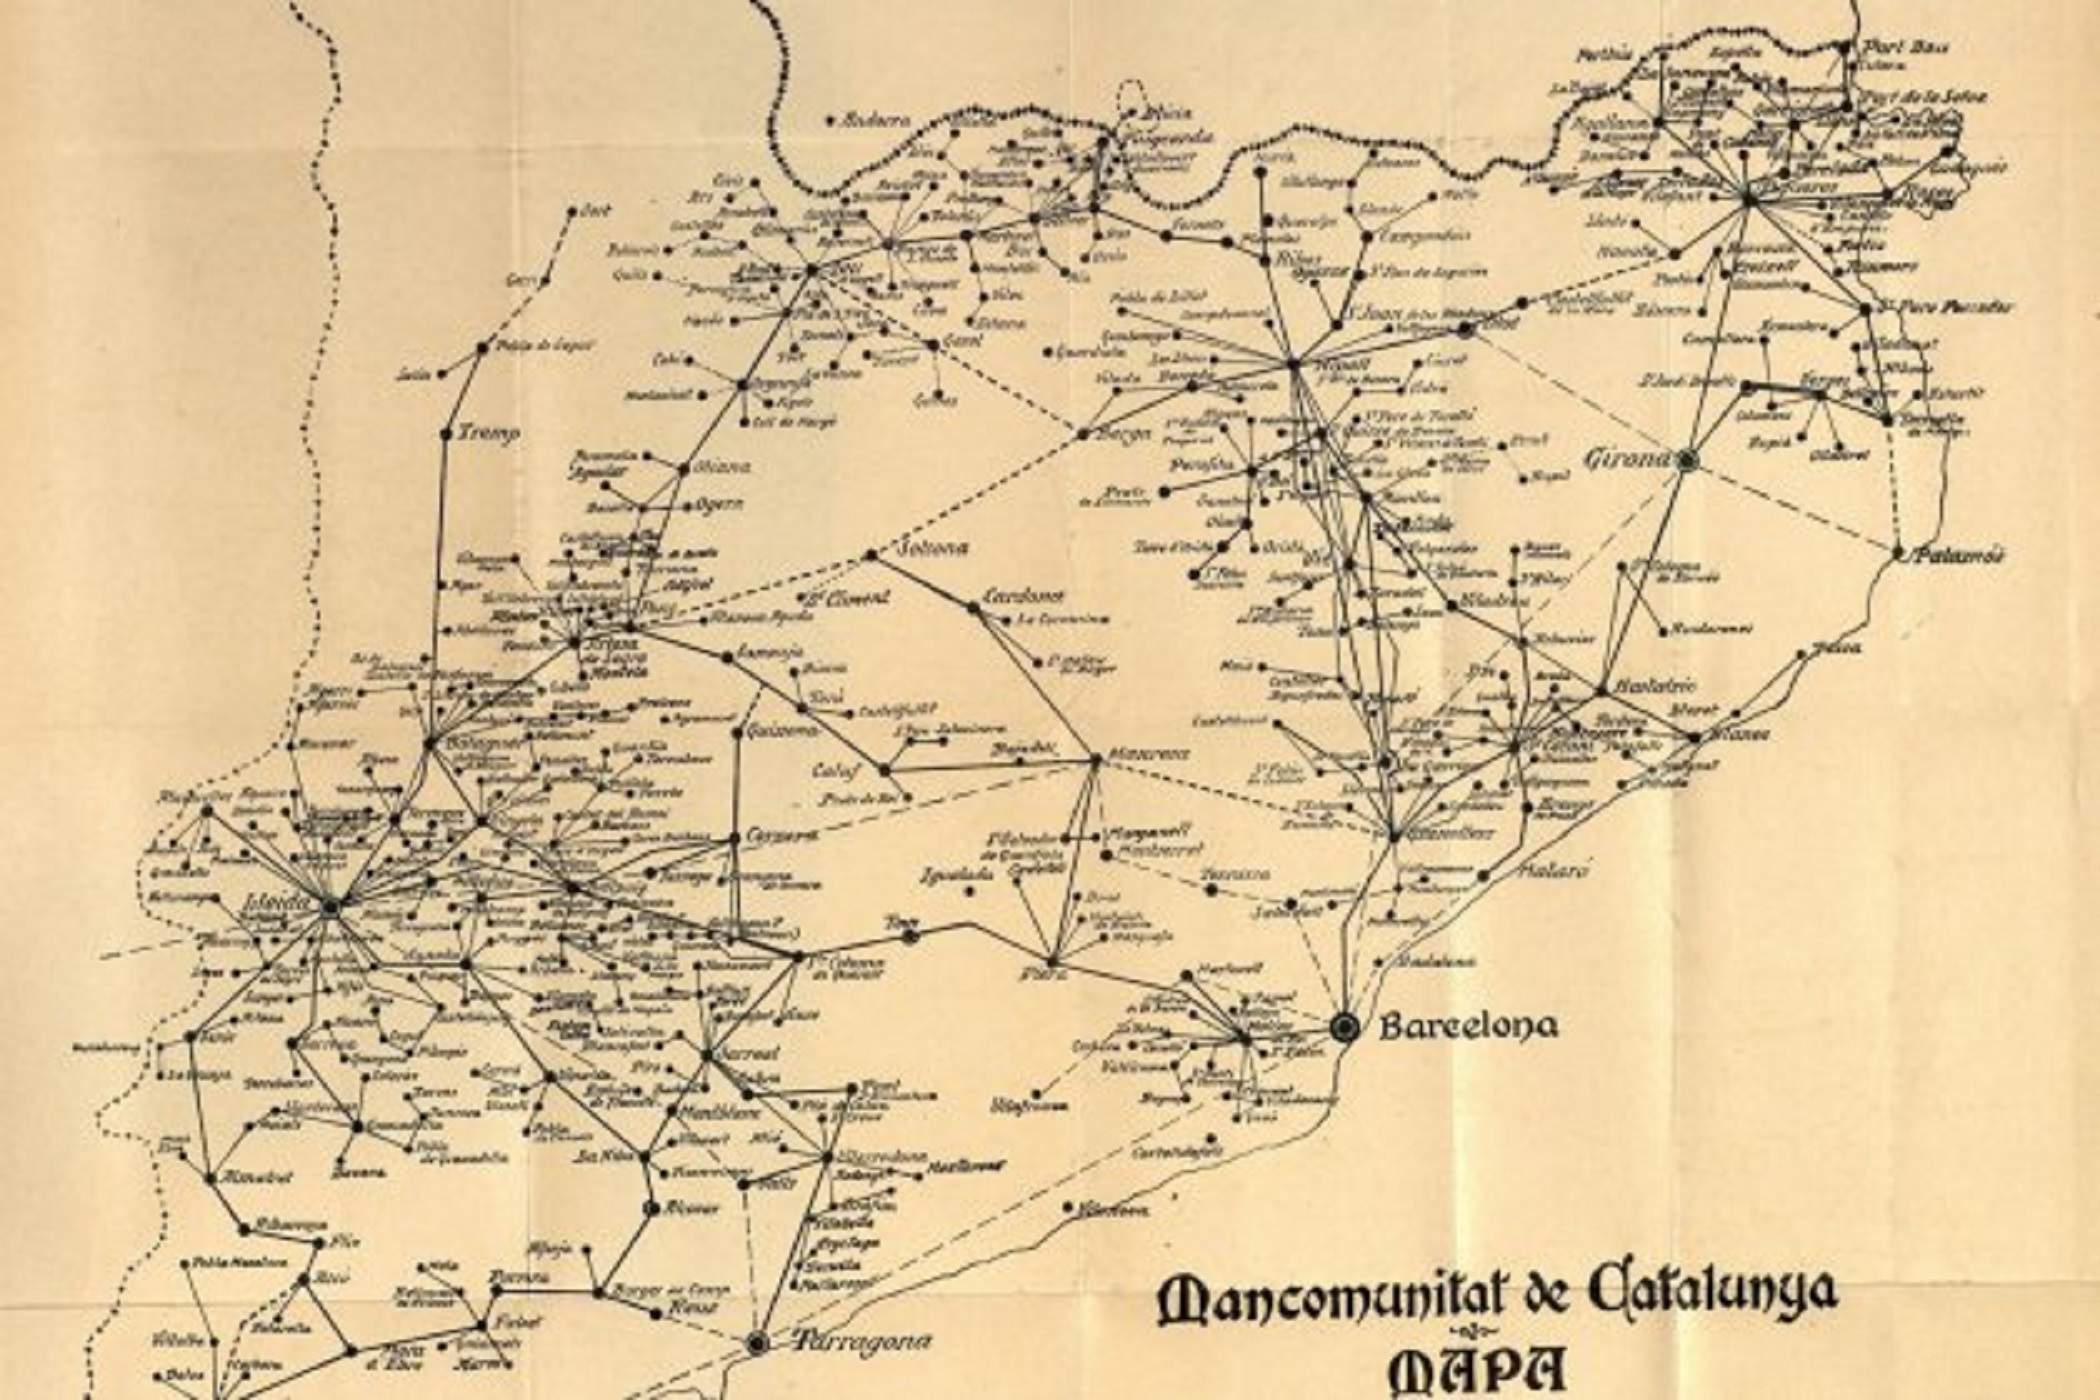 Mapa de la xarxa telefònica catalana (1922) impulsada per la Mancomunitat. Font Cartoteca de Catalunya